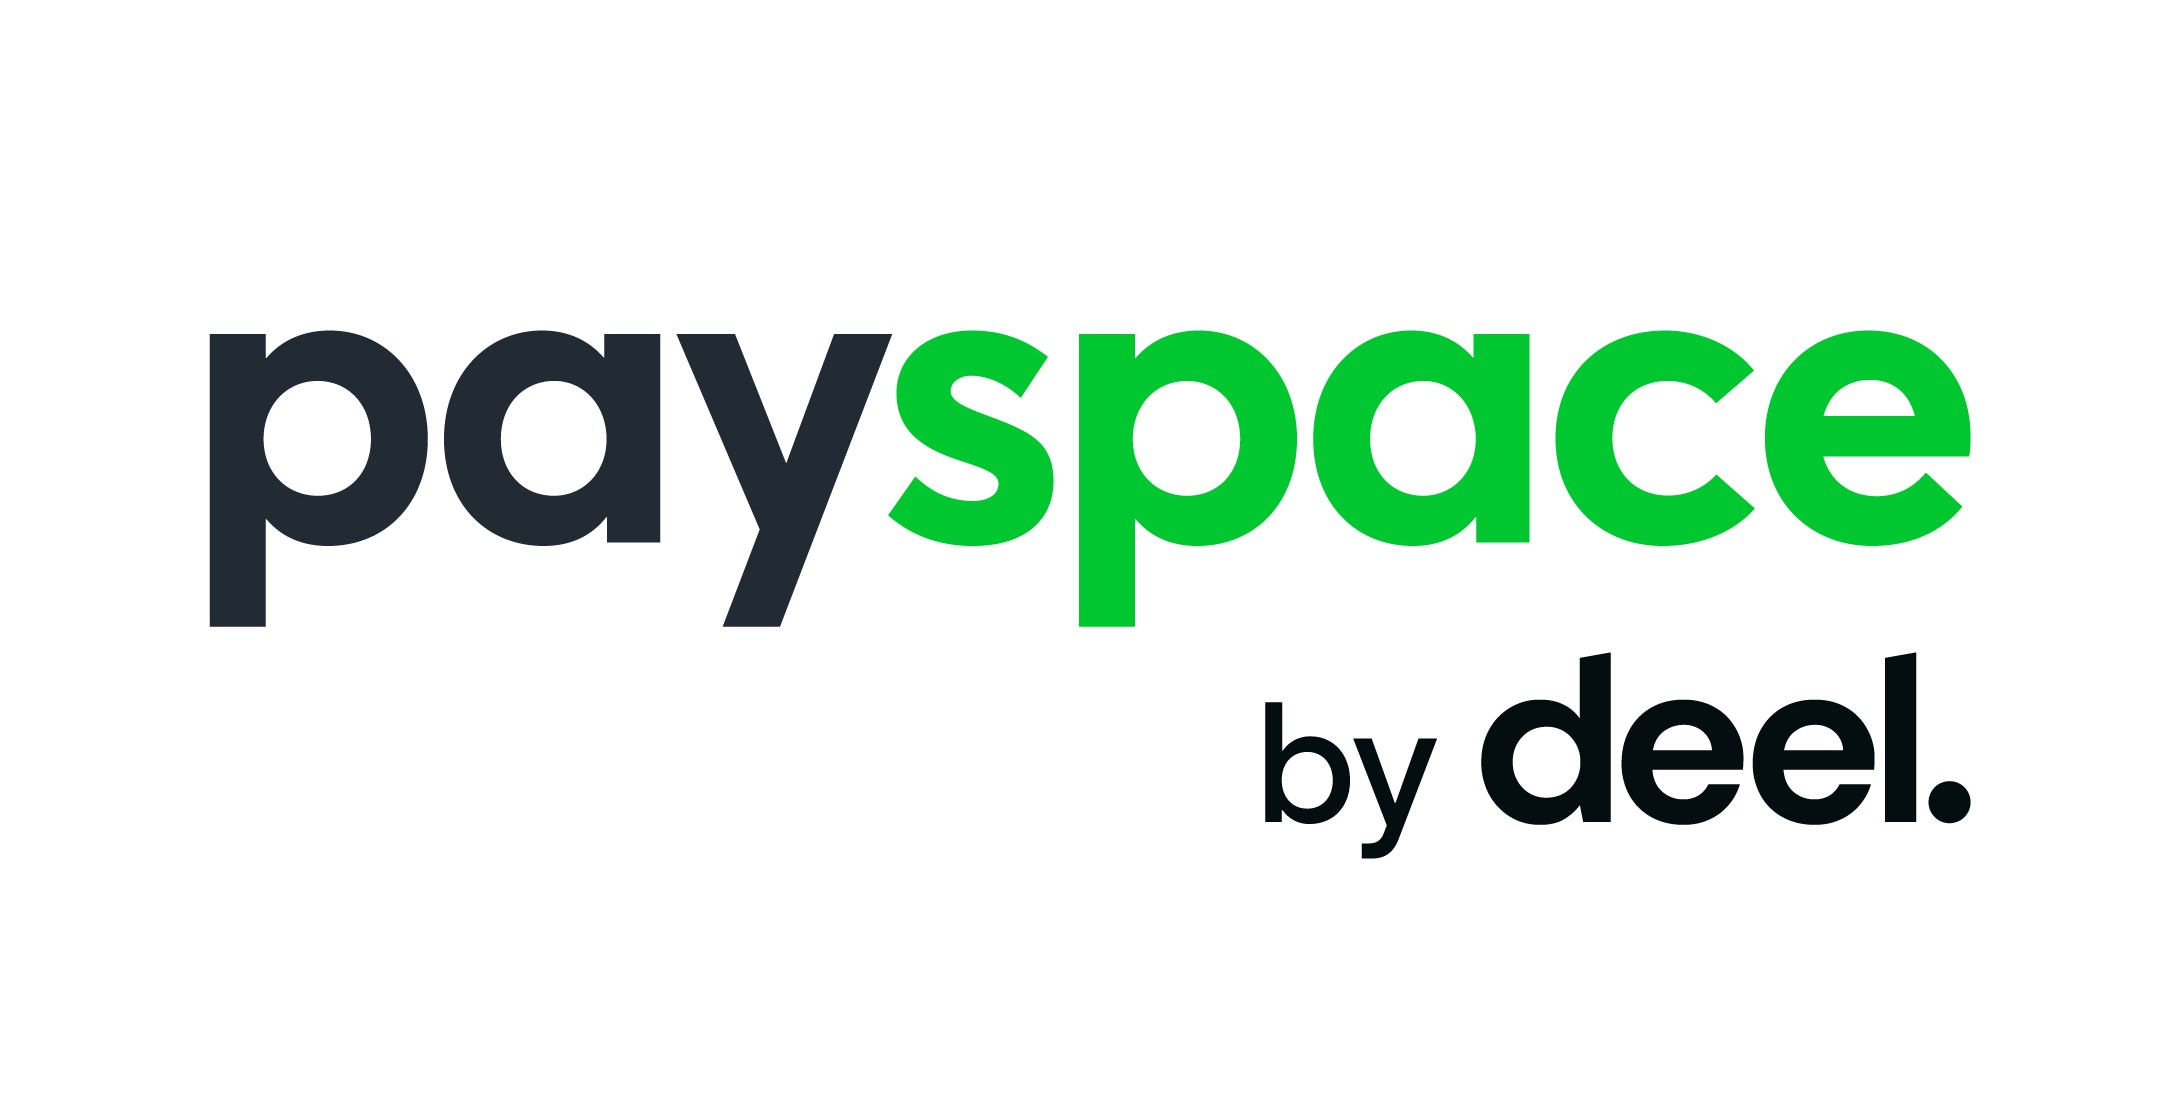 Deel fait l’acquisition de PaySpace, renforçant ainsi sa position de leader sur le marché des systèmes de paie internationaux